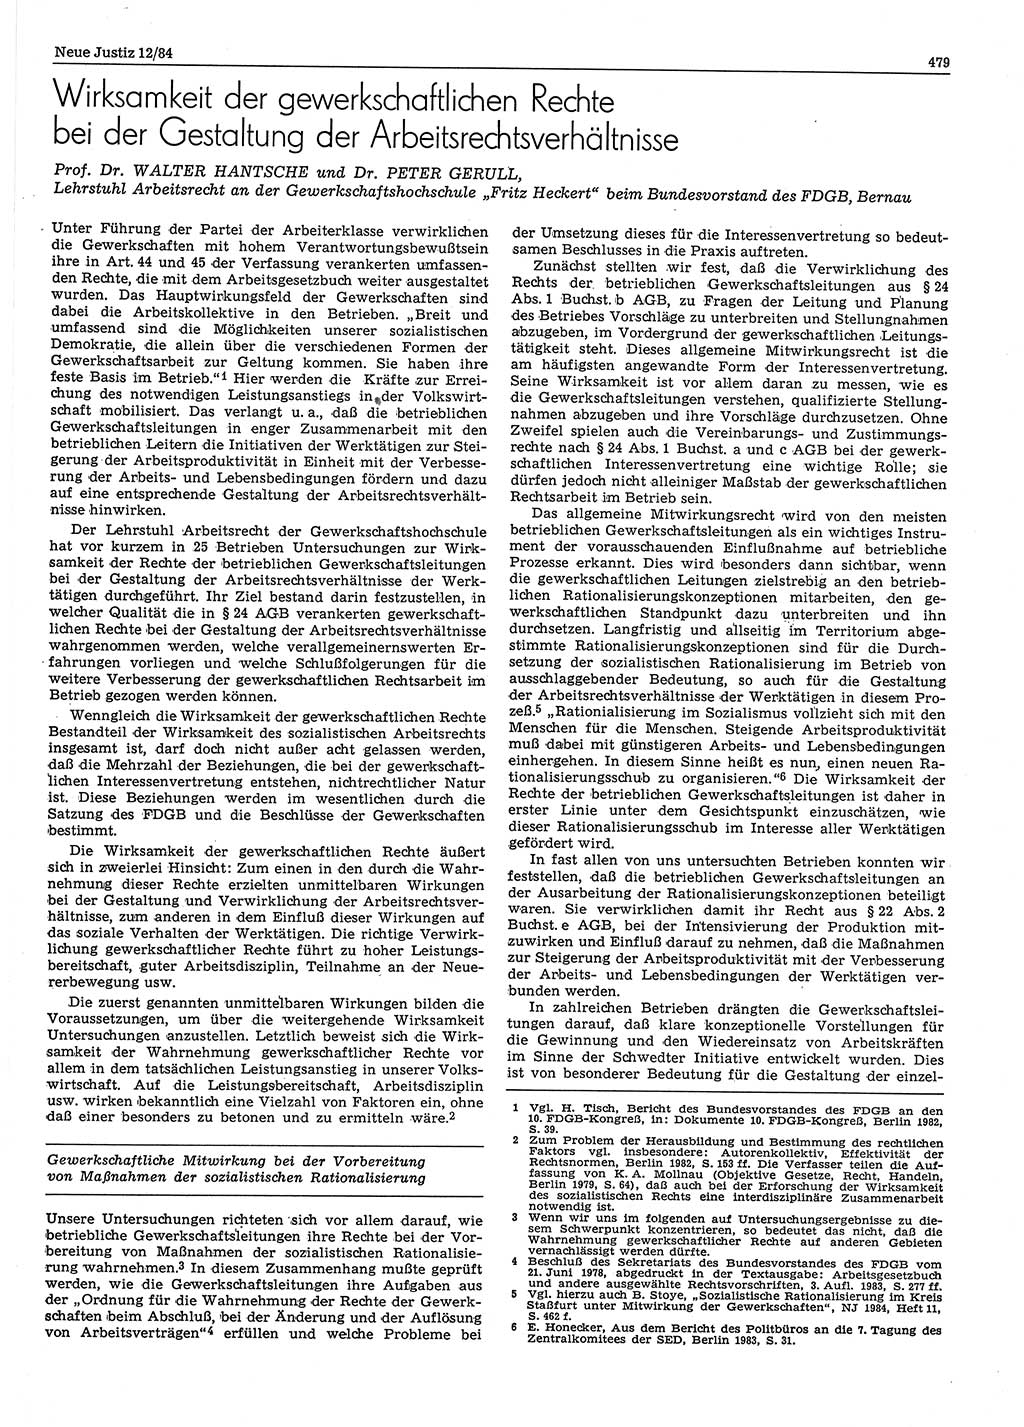 Neue Justiz (NJ), Zeitschrift für sozialistisches Recht und Gesetzlichkeit [Deutsche Demokratische Republik (DDR)], 38. Jahrgang 1984, Seite 479 (NJ DDR 1984, S. 479)